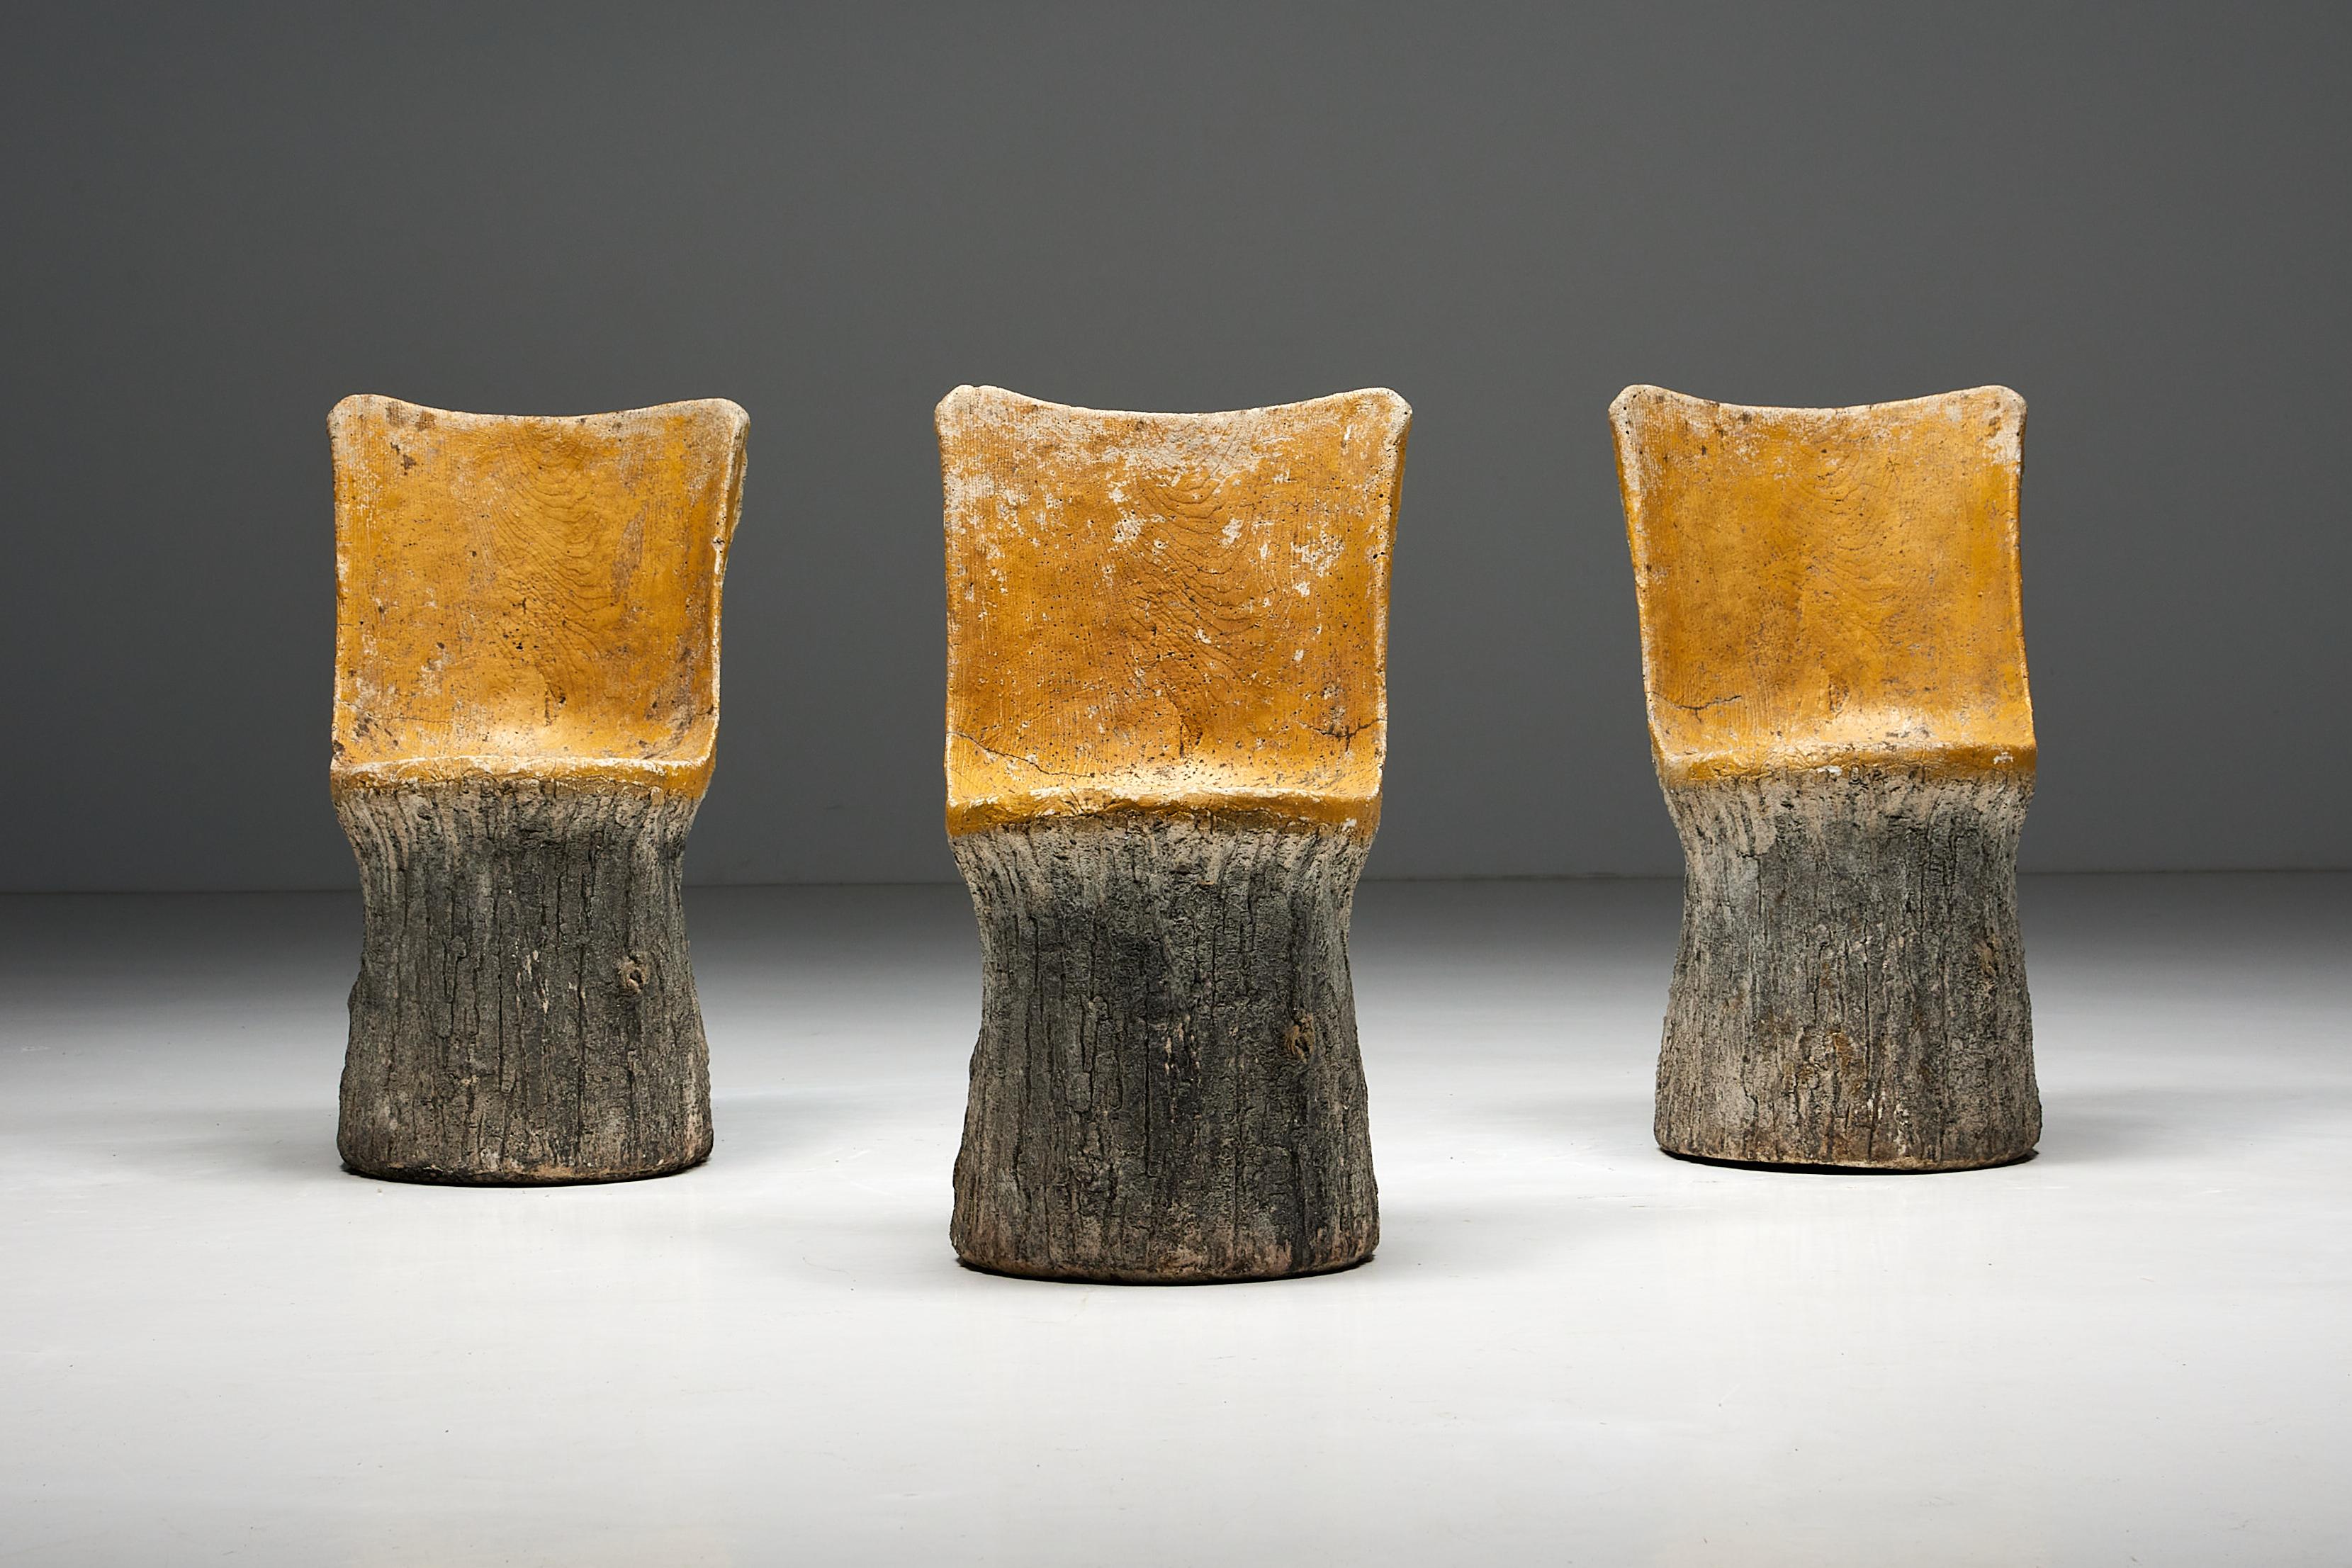 Betonstühle aus dem Frankreich der 1970er Jahre, die mit einem bemerkenswerten Design aufwarten. Diese Stühle bieten ein einzigartiges Design aus Holzimitat, das der natürlichen Schönheit von Baumstämmen sehr ähnlich ist. Mit ihren komplizierten